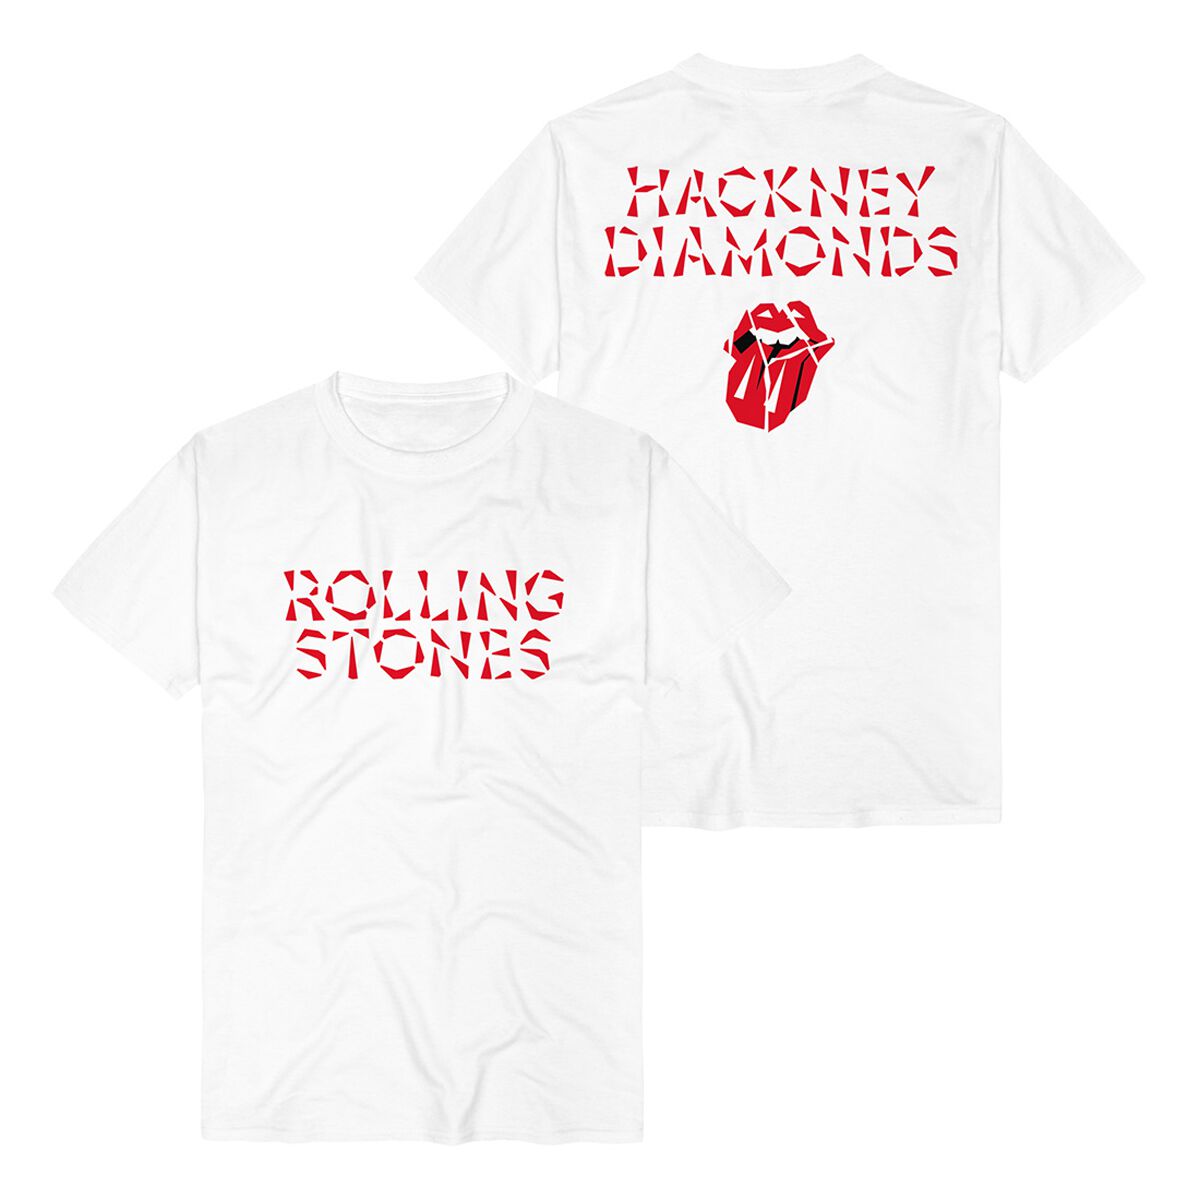 The Rolling Stones T-Shirt - Hackney Diamonds Logo - S bis XXL - für Männer - Größe S - weiß  - Lizenziertes Merchandise!